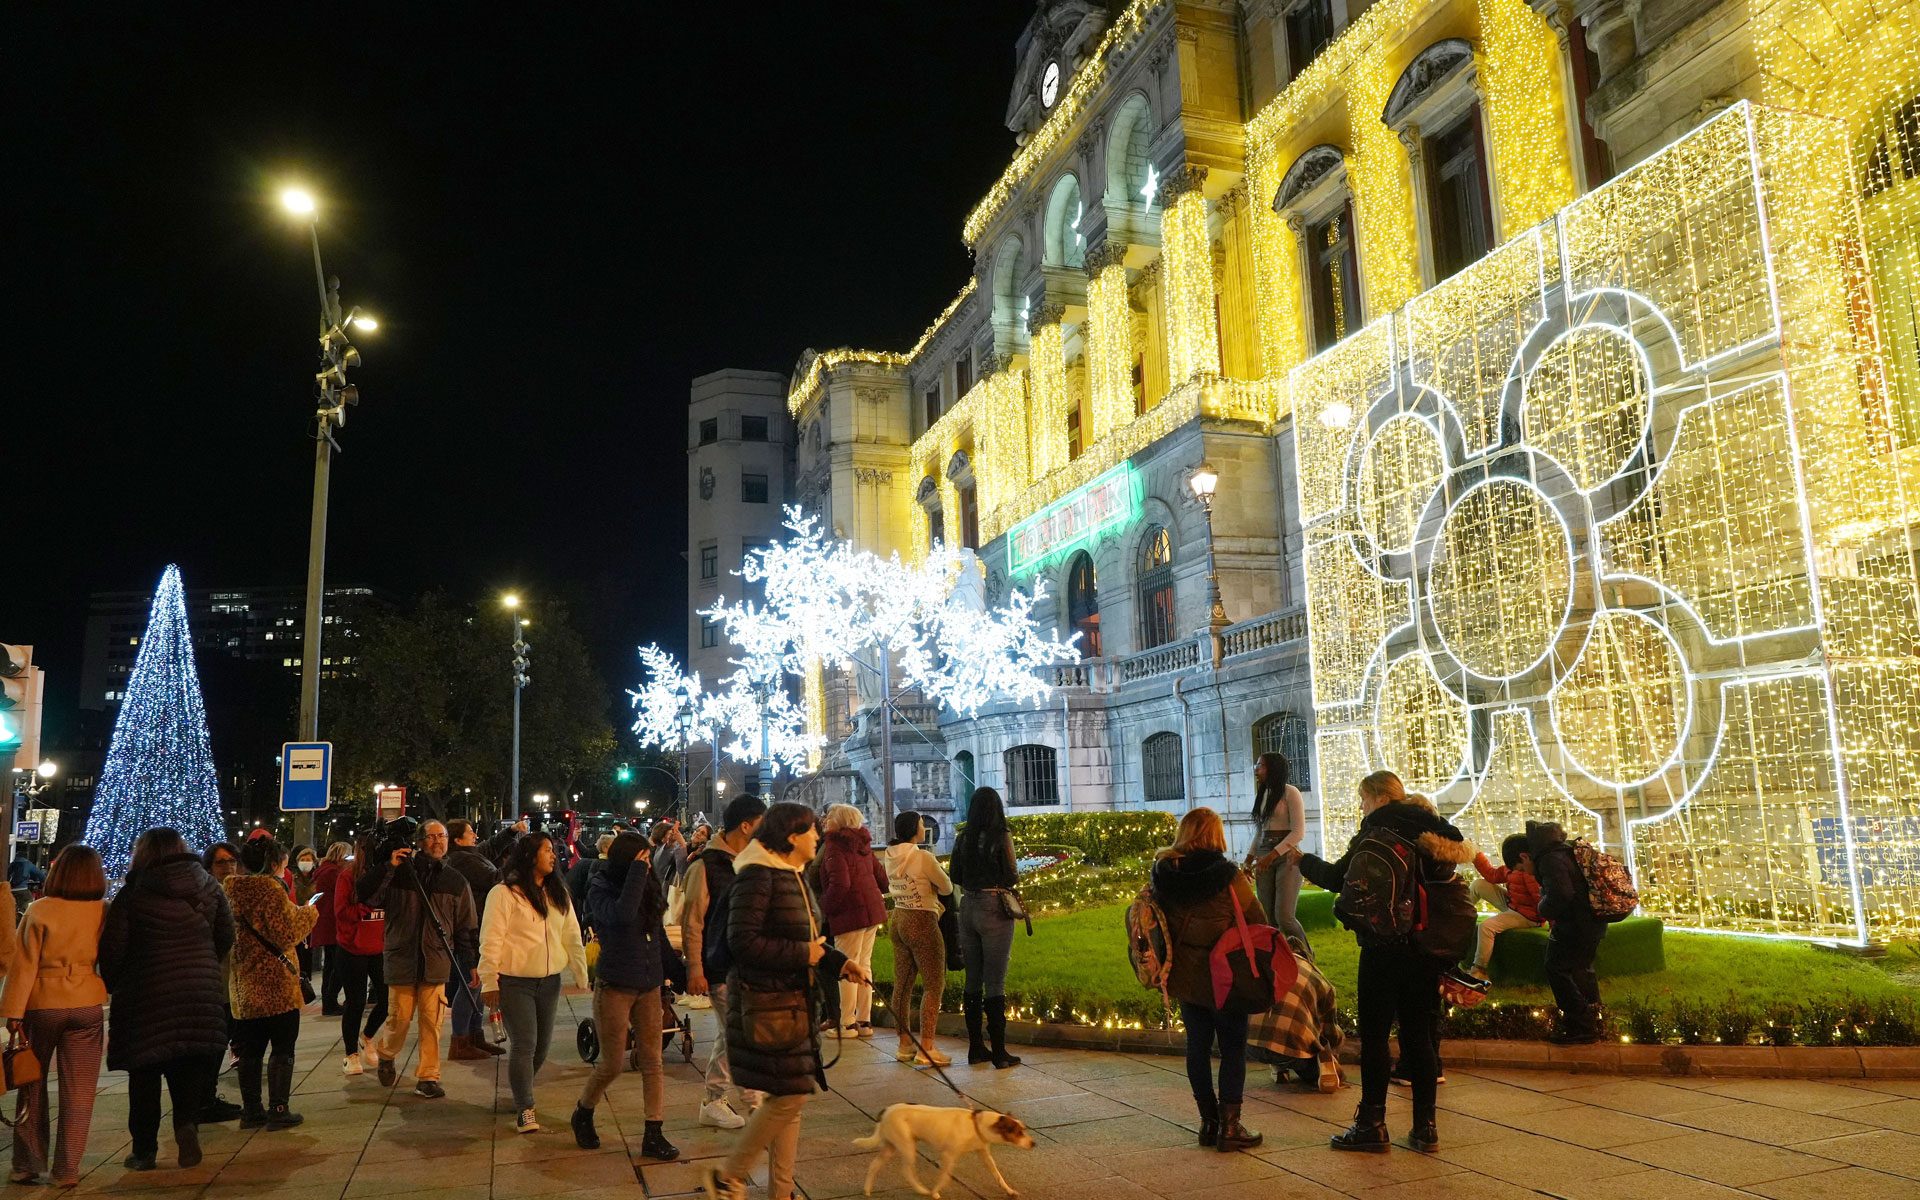 Fachada del Ayuntamiento de Bilbao con el encendido navideño